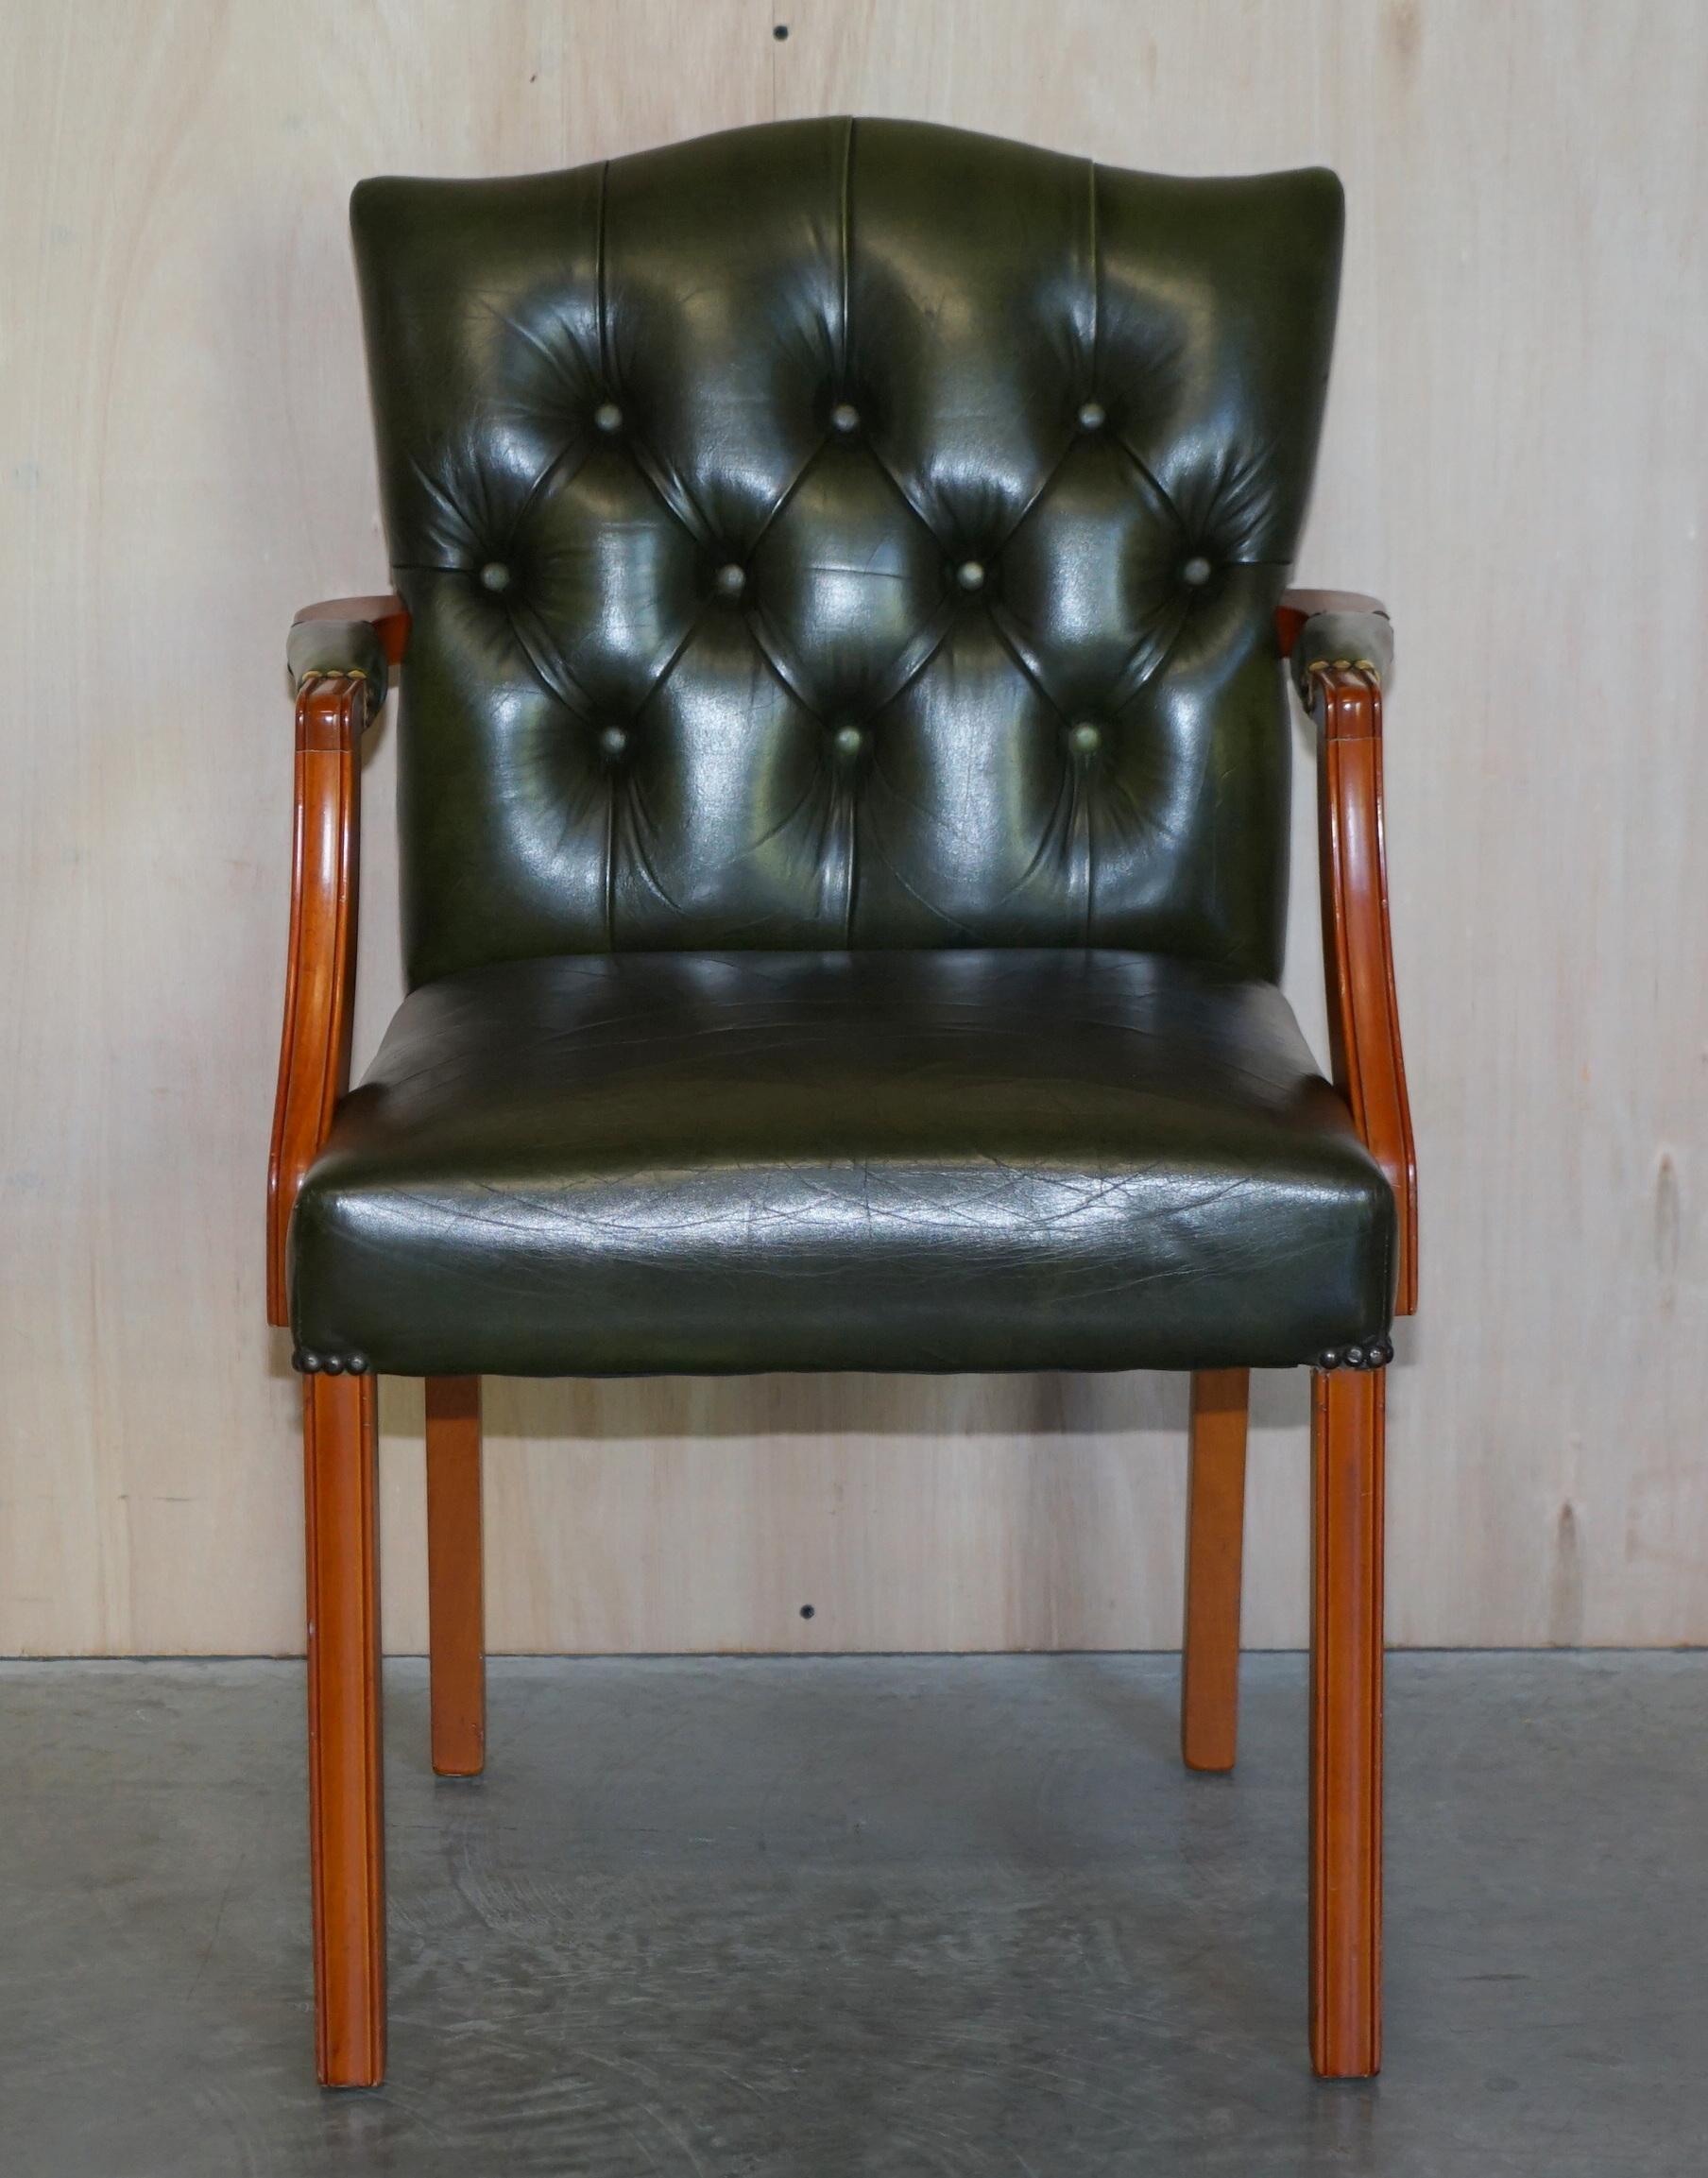 Nous sommes ravis d'offrir à la vente cette belle chaise de bureau vintage Regency en cuir vert, Chesterfield touffeté

Une chaise de bureau de belle apparence et de bonne facture, idéalement assortie à un bureau à deux caissons en cuir